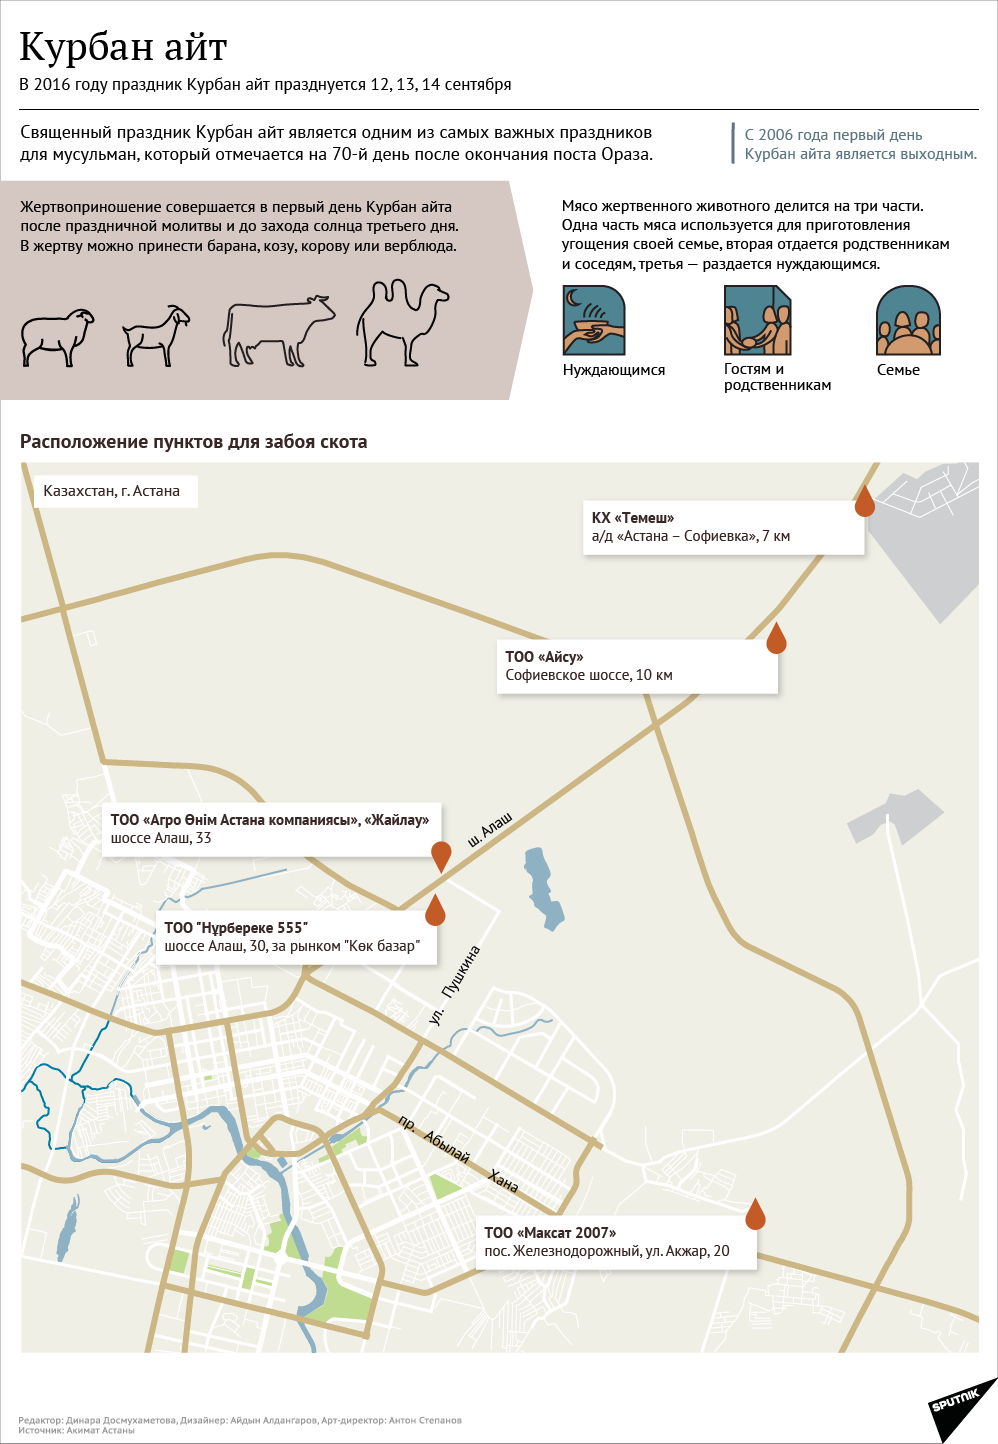 Места в Астане для забоя скота в Курбан айт - Sputnik Казахстан